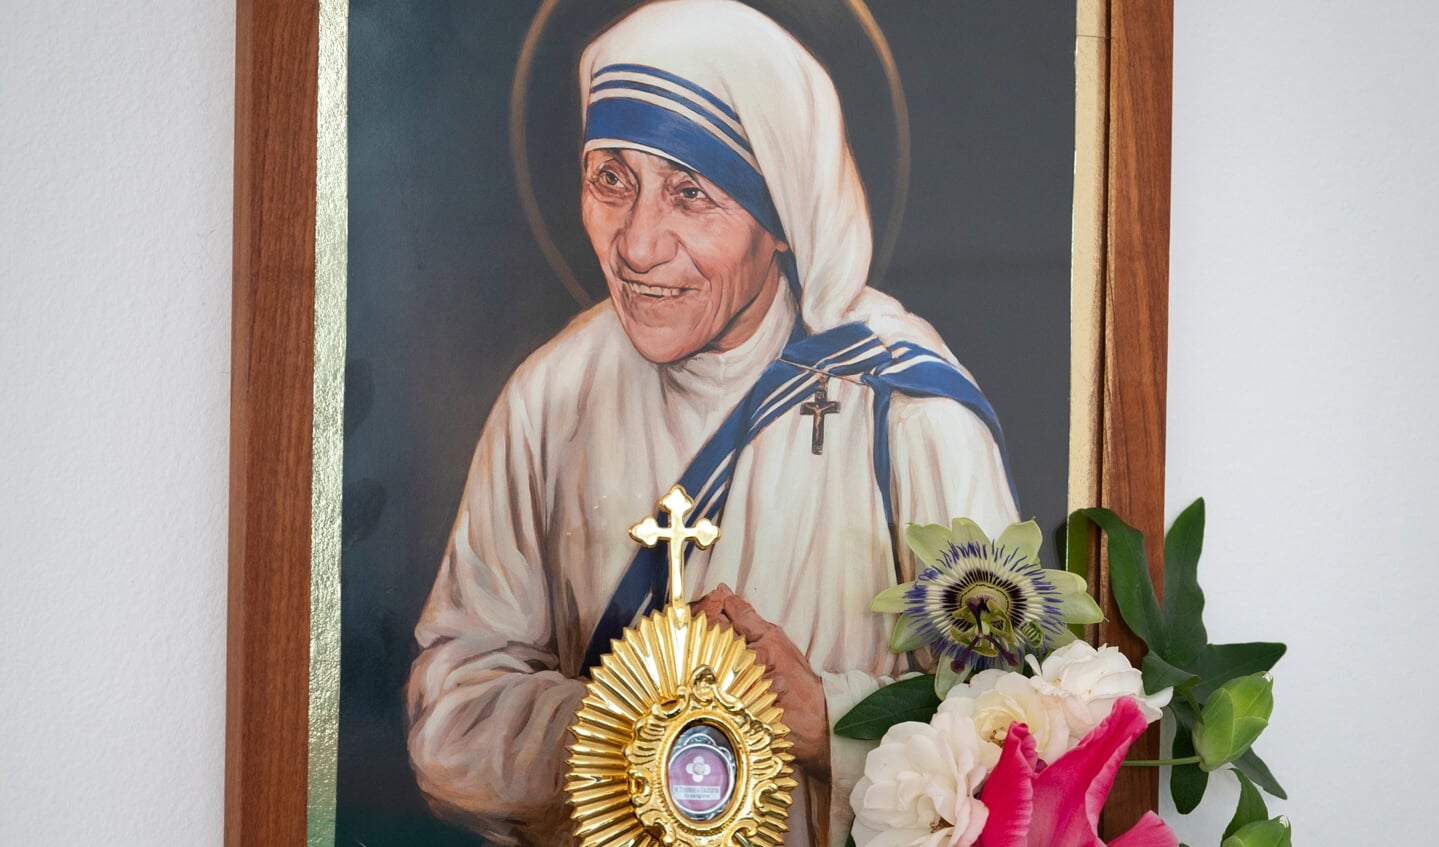 Moeder Teresa komt bij de zusters veelvuldig ter sprake. ‘Laten we het hebben over wat zij heeft gedaan. Niet over ons nu.’